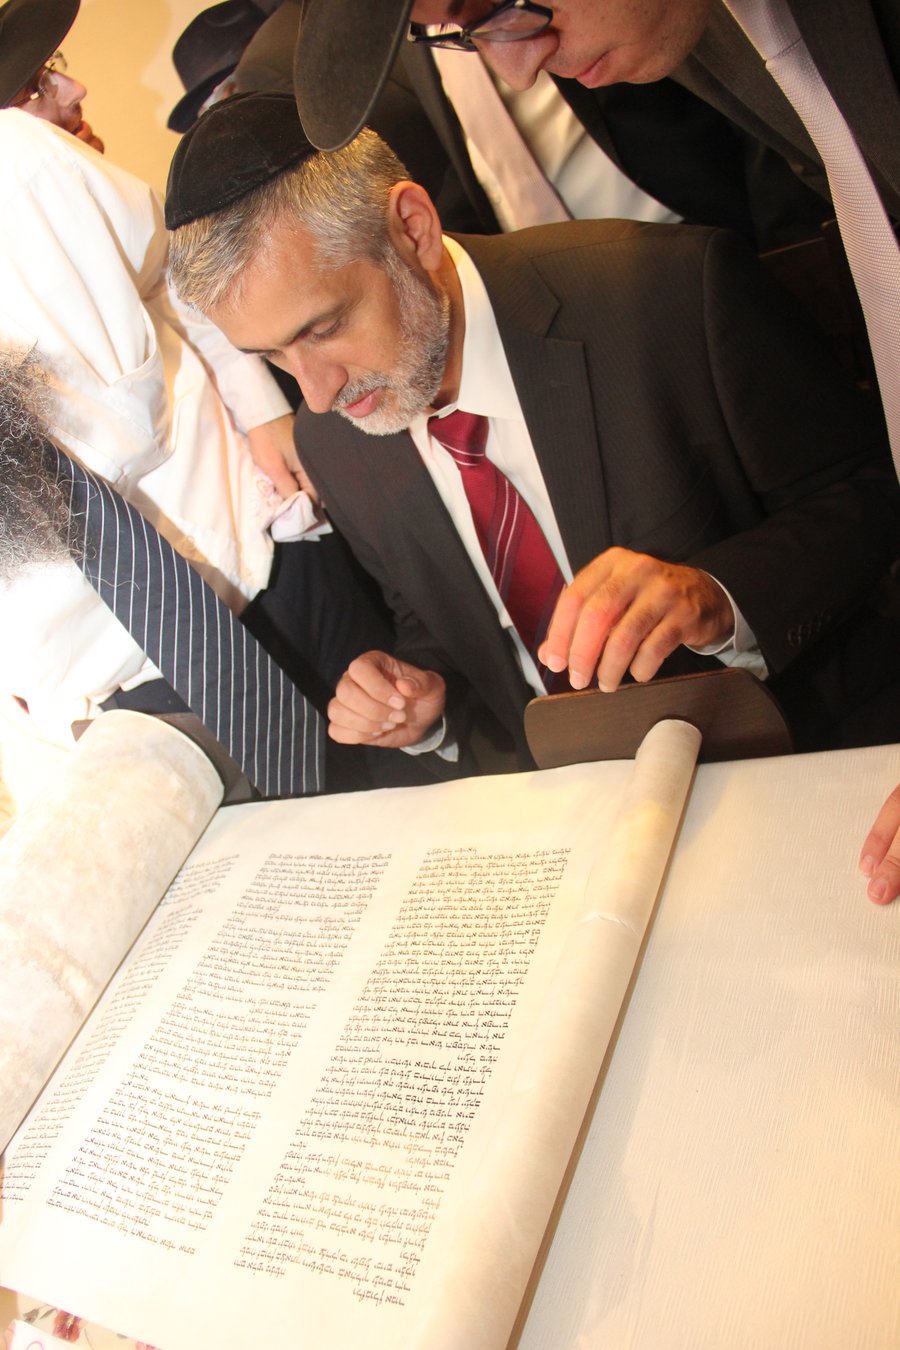 גלריה: הכנסת ספר תורה לבית המדרש "הרב פרדס" שבקרית יובל